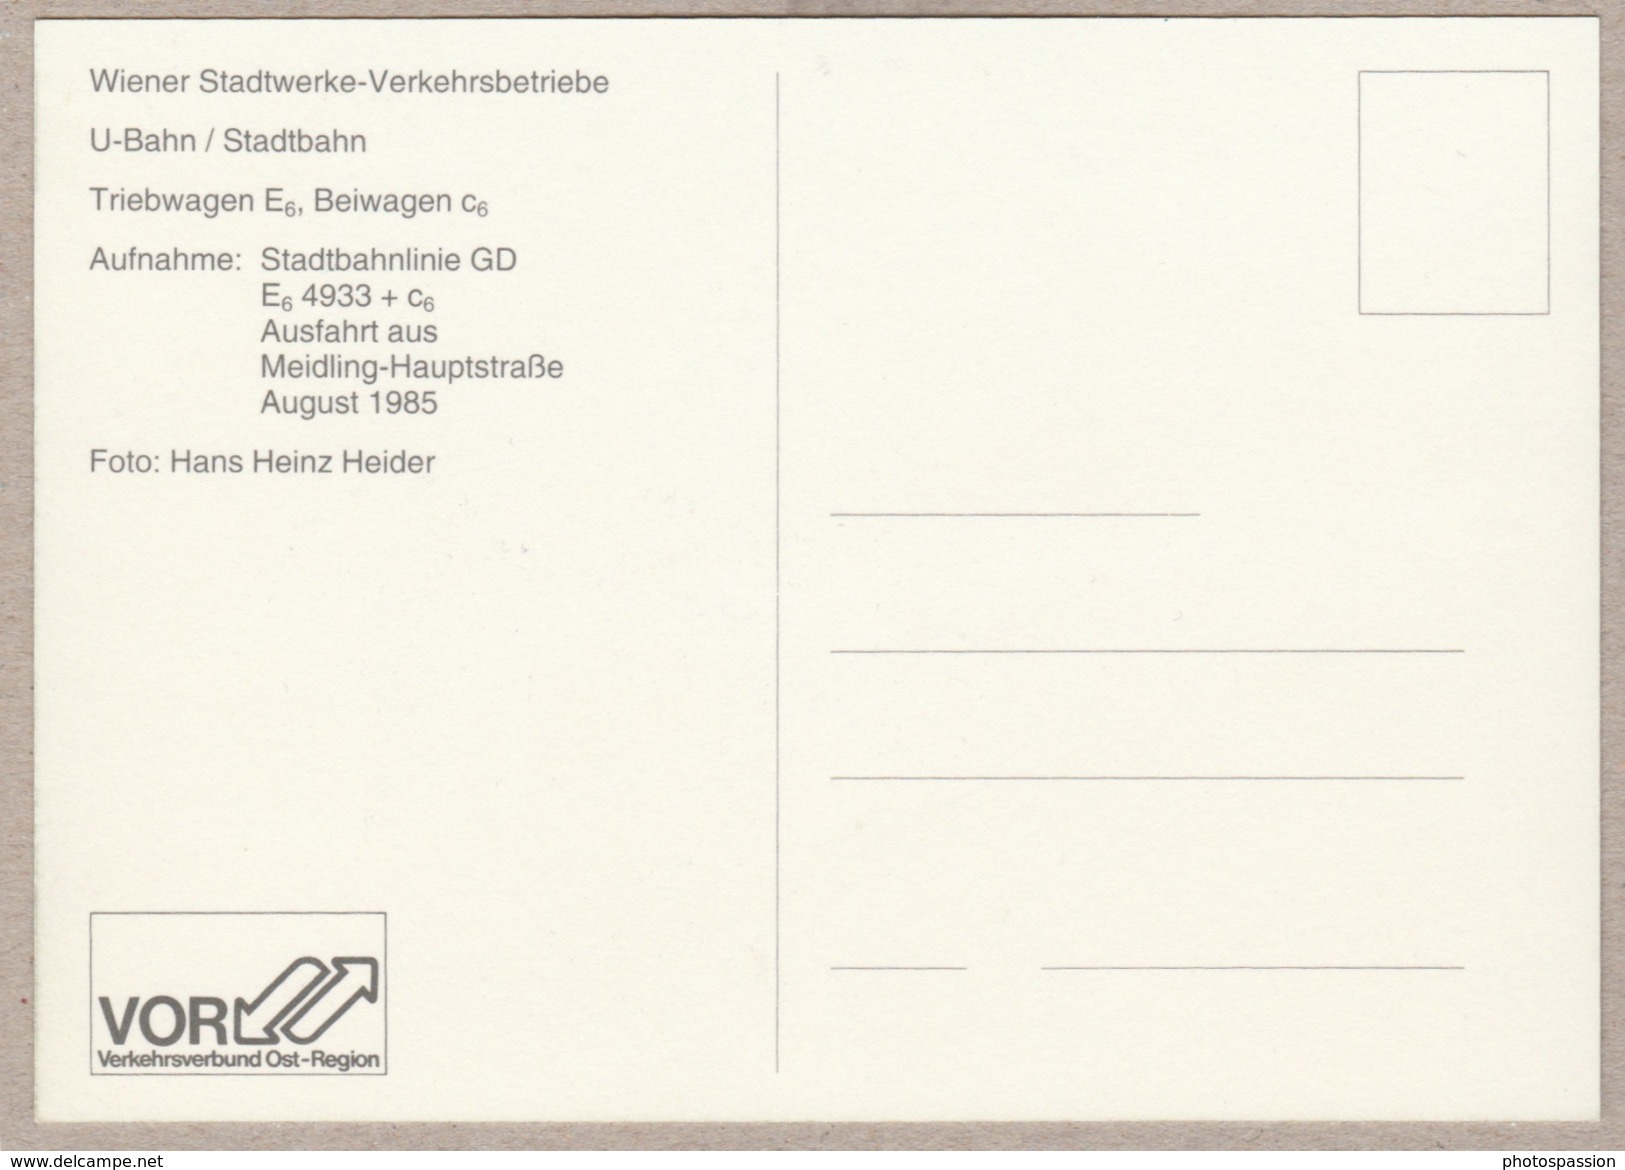 Wiener Stadtwerke-Verkehrsbetriebe - Triebwagen E6 Und Beiwagen C6 Ausfahrt Aus Mietling-Hauptstrasse August 1985 - Trains